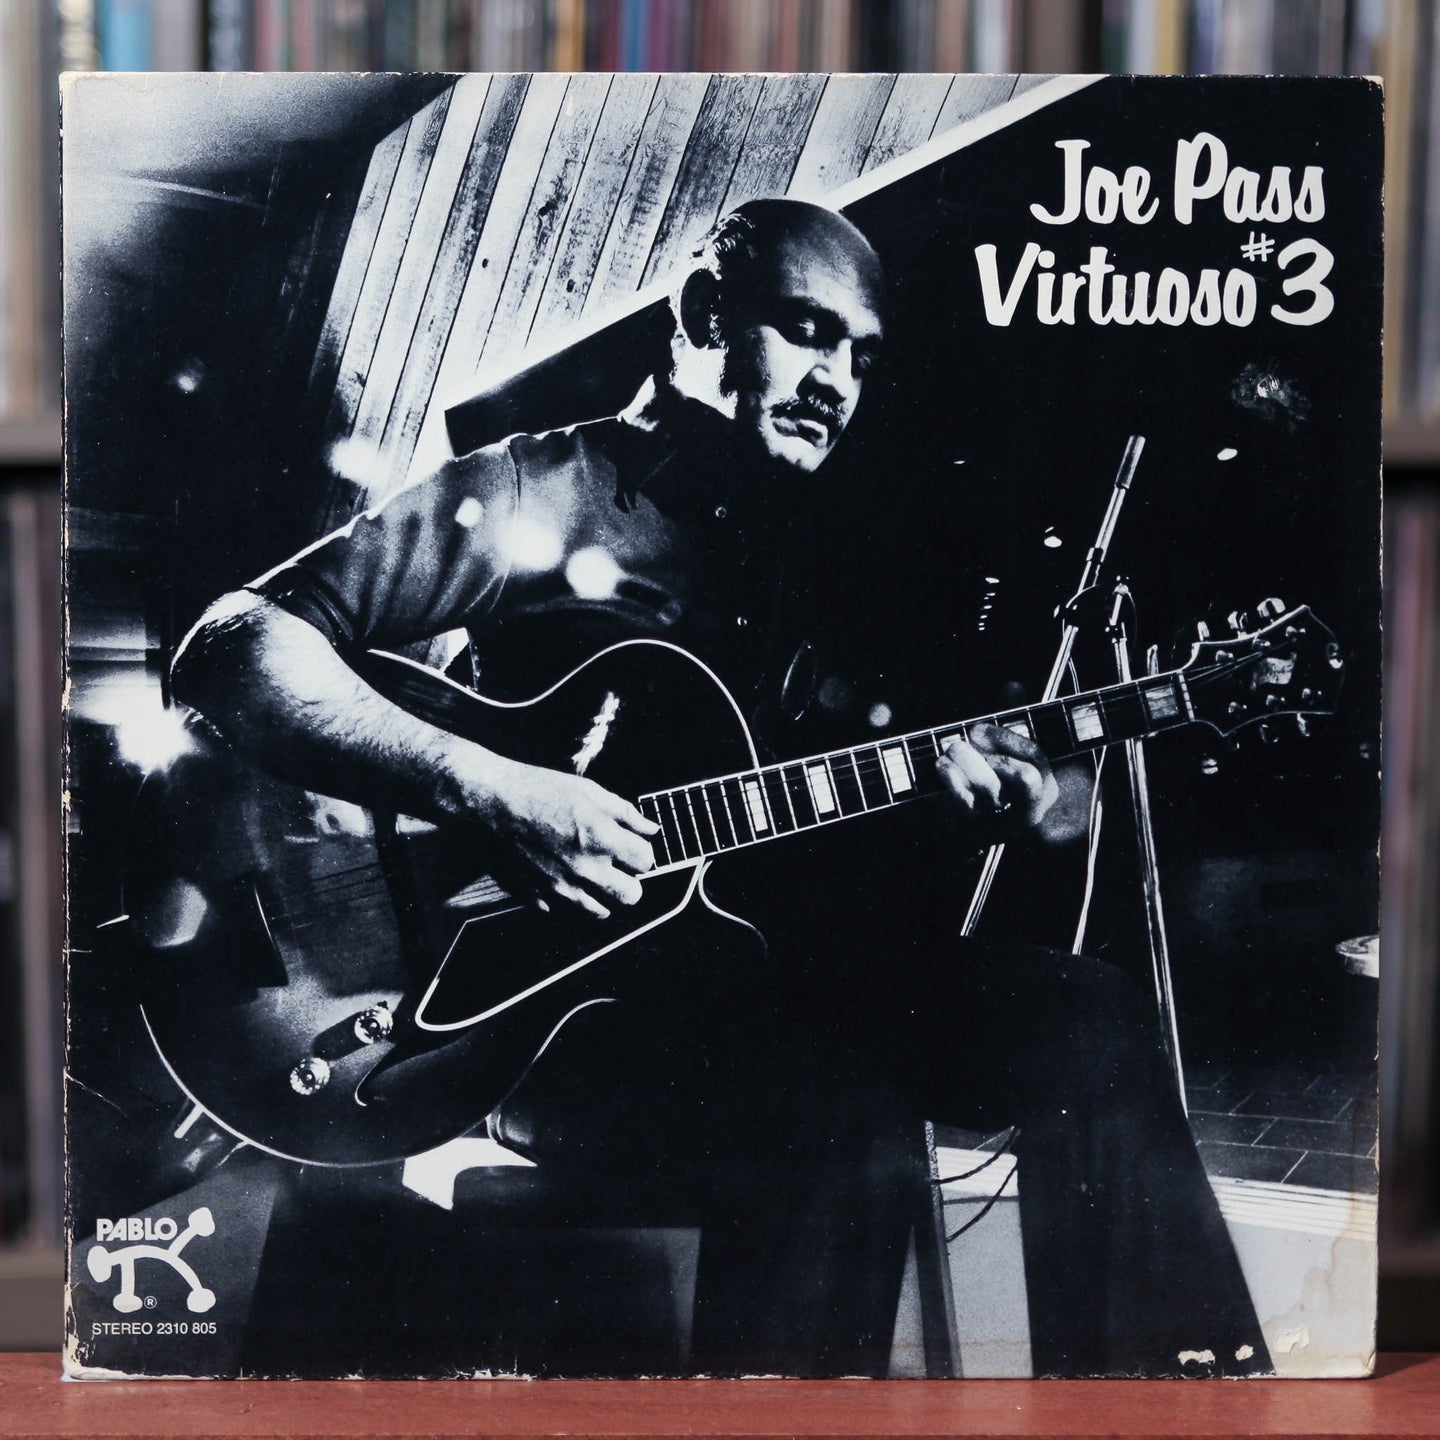 Joe Pass - Virtuoso #3 - 1978 Pablo, VG/EX